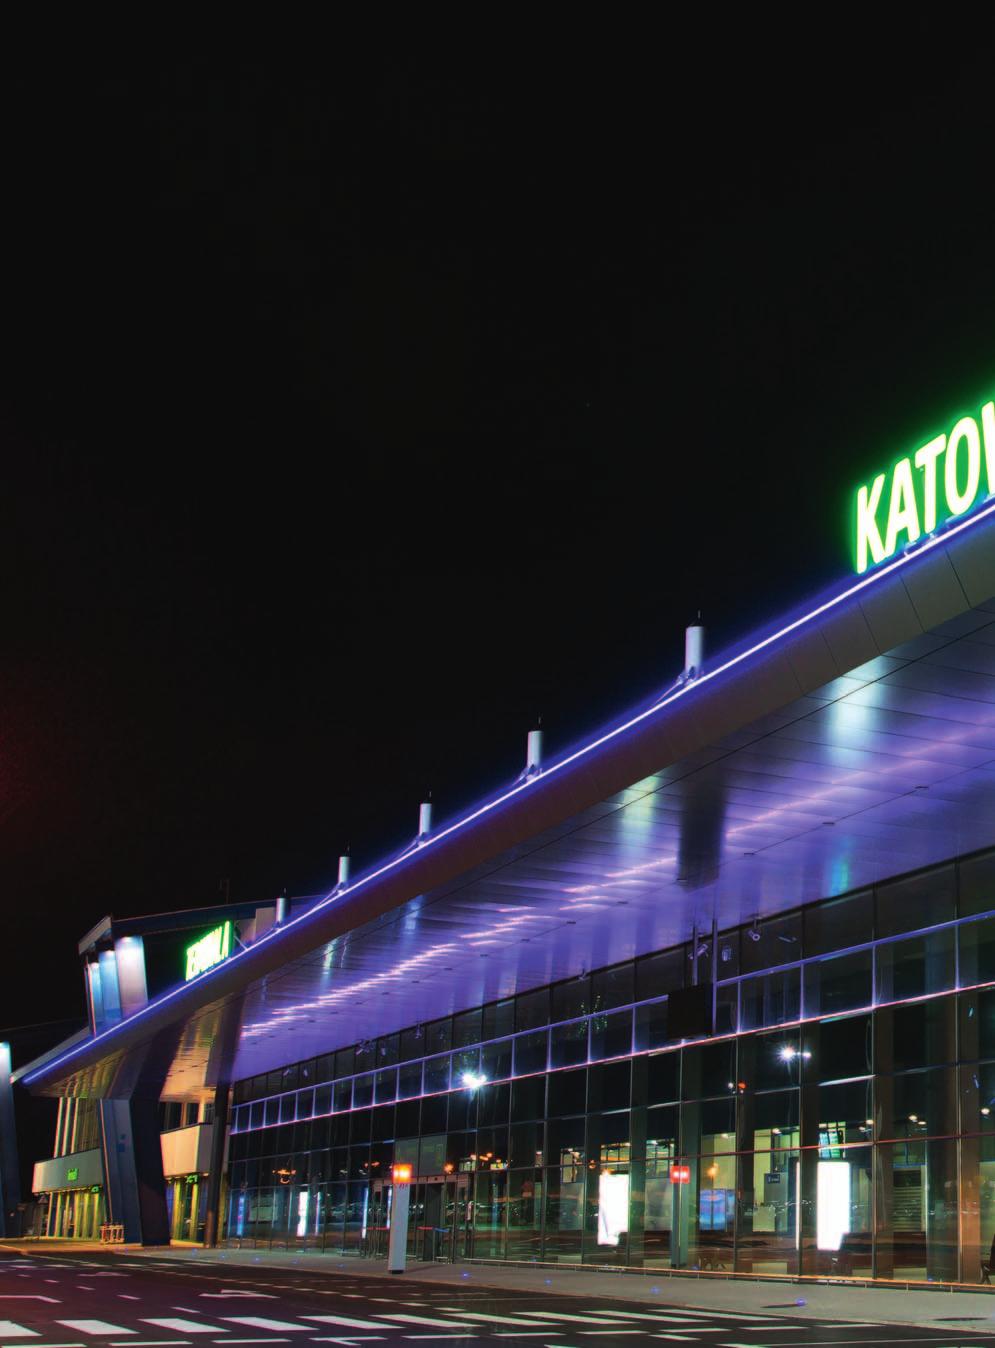 Międzynarodowy Port Lotniczy Katowice w Pyrzowicach (Katowice Airport), zarządzany przez Górnośląskie Towarzystwo Lotnicze SA, to jedno z największych lotnisk użytku publicznego w Polsce, które od